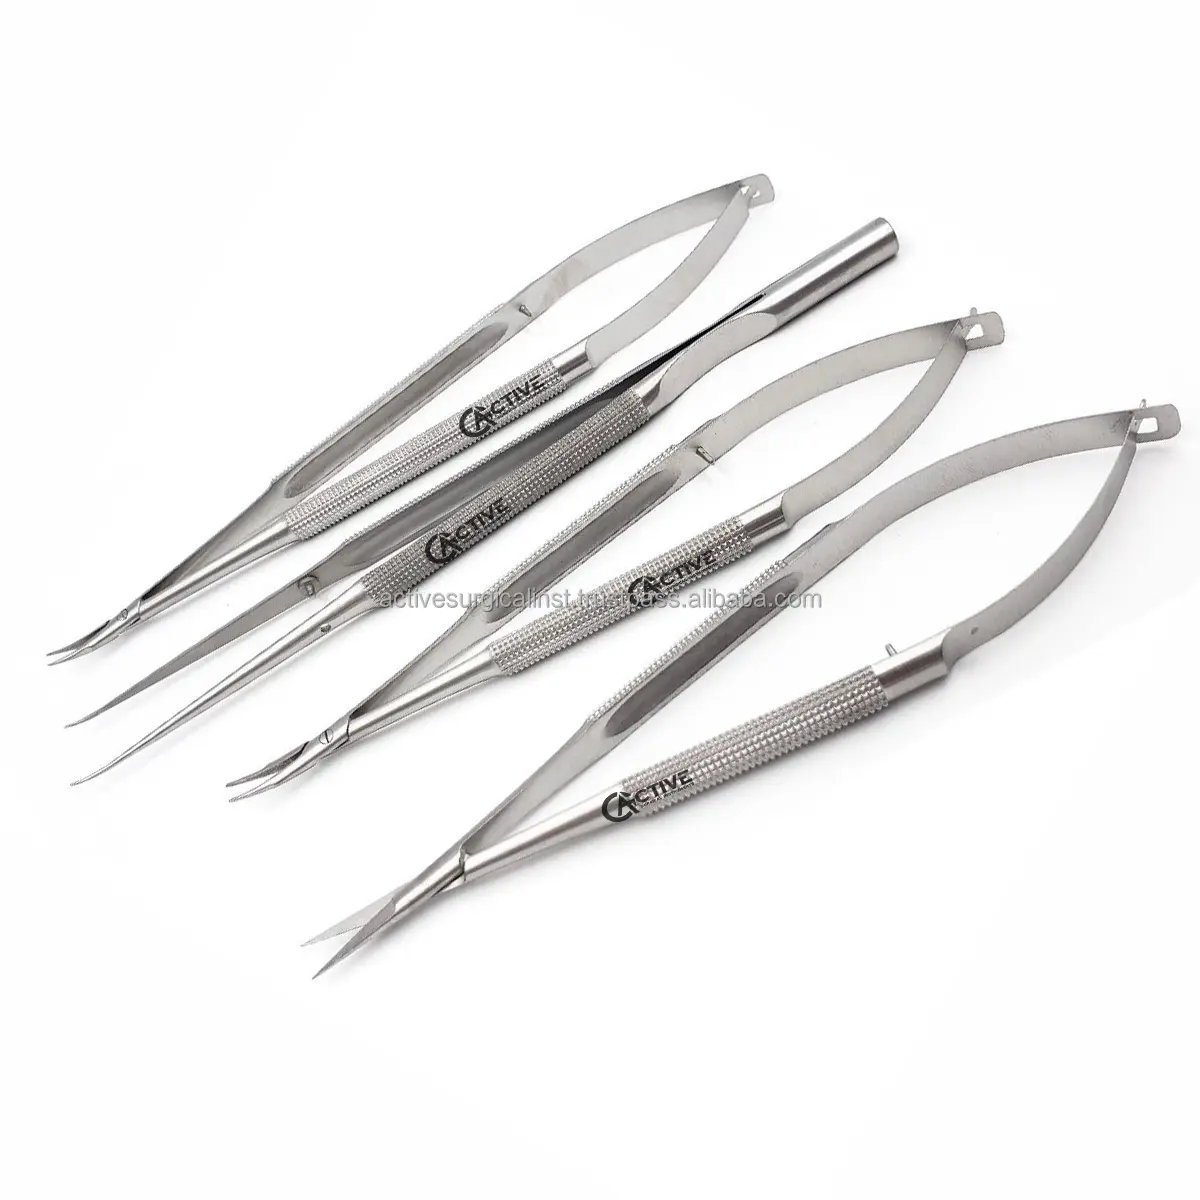 Conjunto de Micro instrumentos quirúrgicos de CASTROVIEJO alemán, tijera de Castroviejo, soportes de aguja, pinzas, 4 Uds.